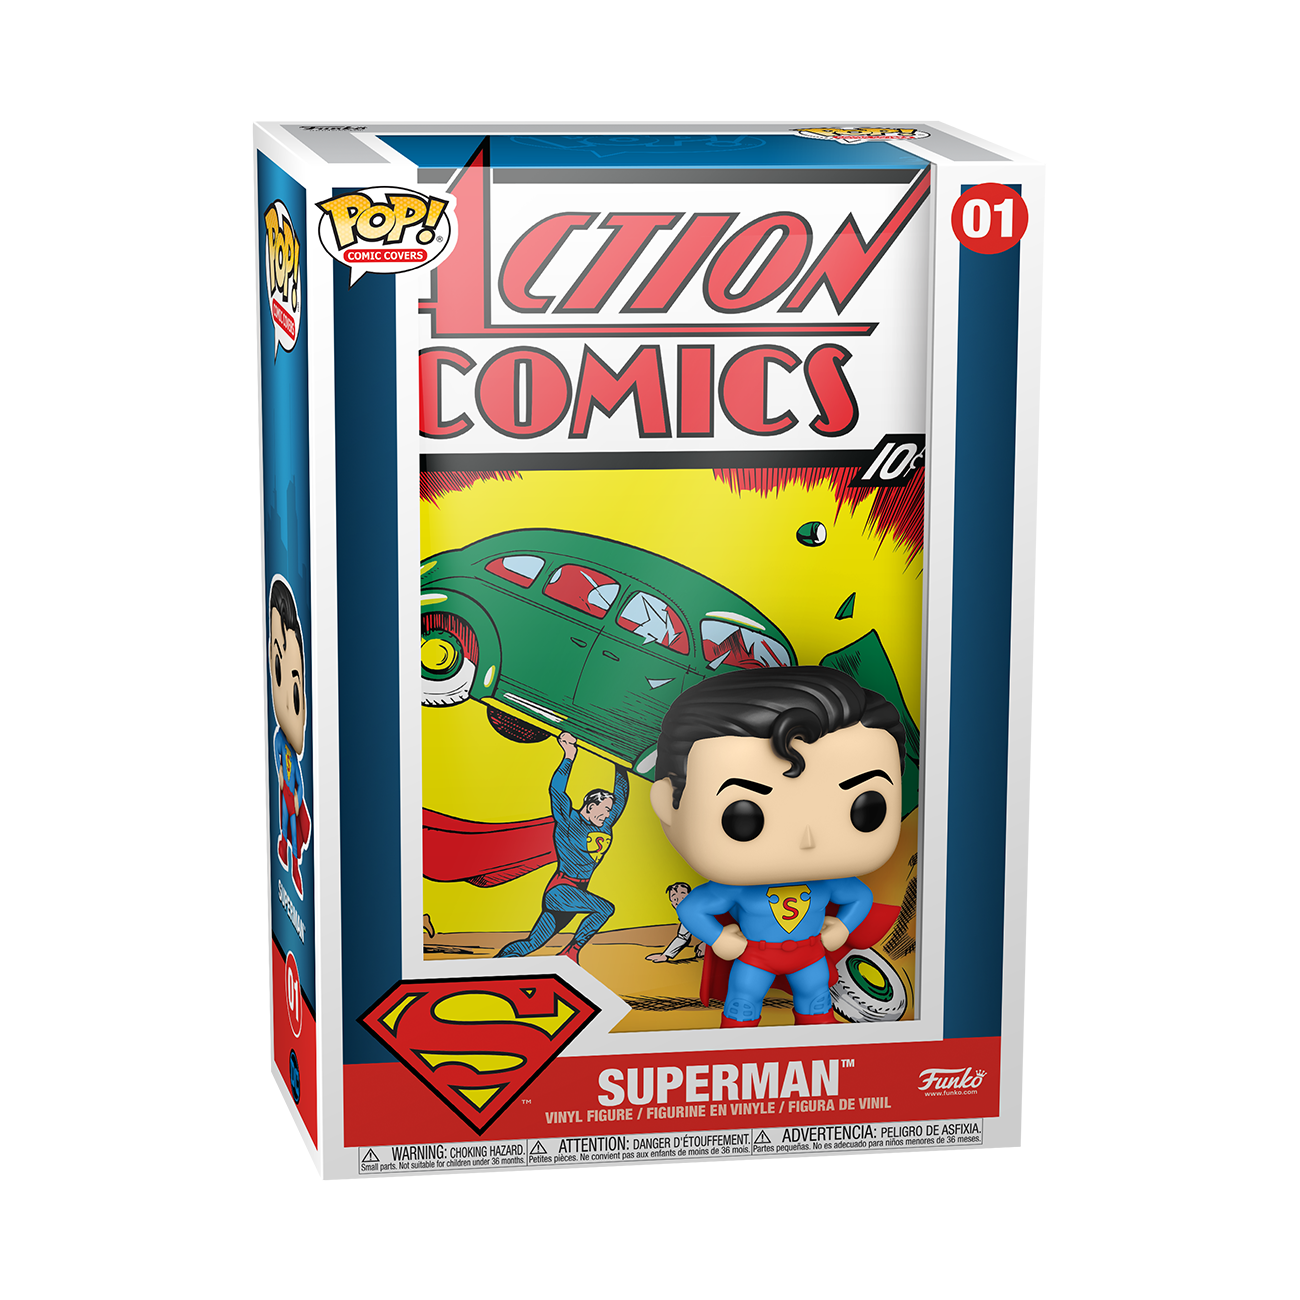 POP! Comic Cover: DC Comics - Superman Action Comics